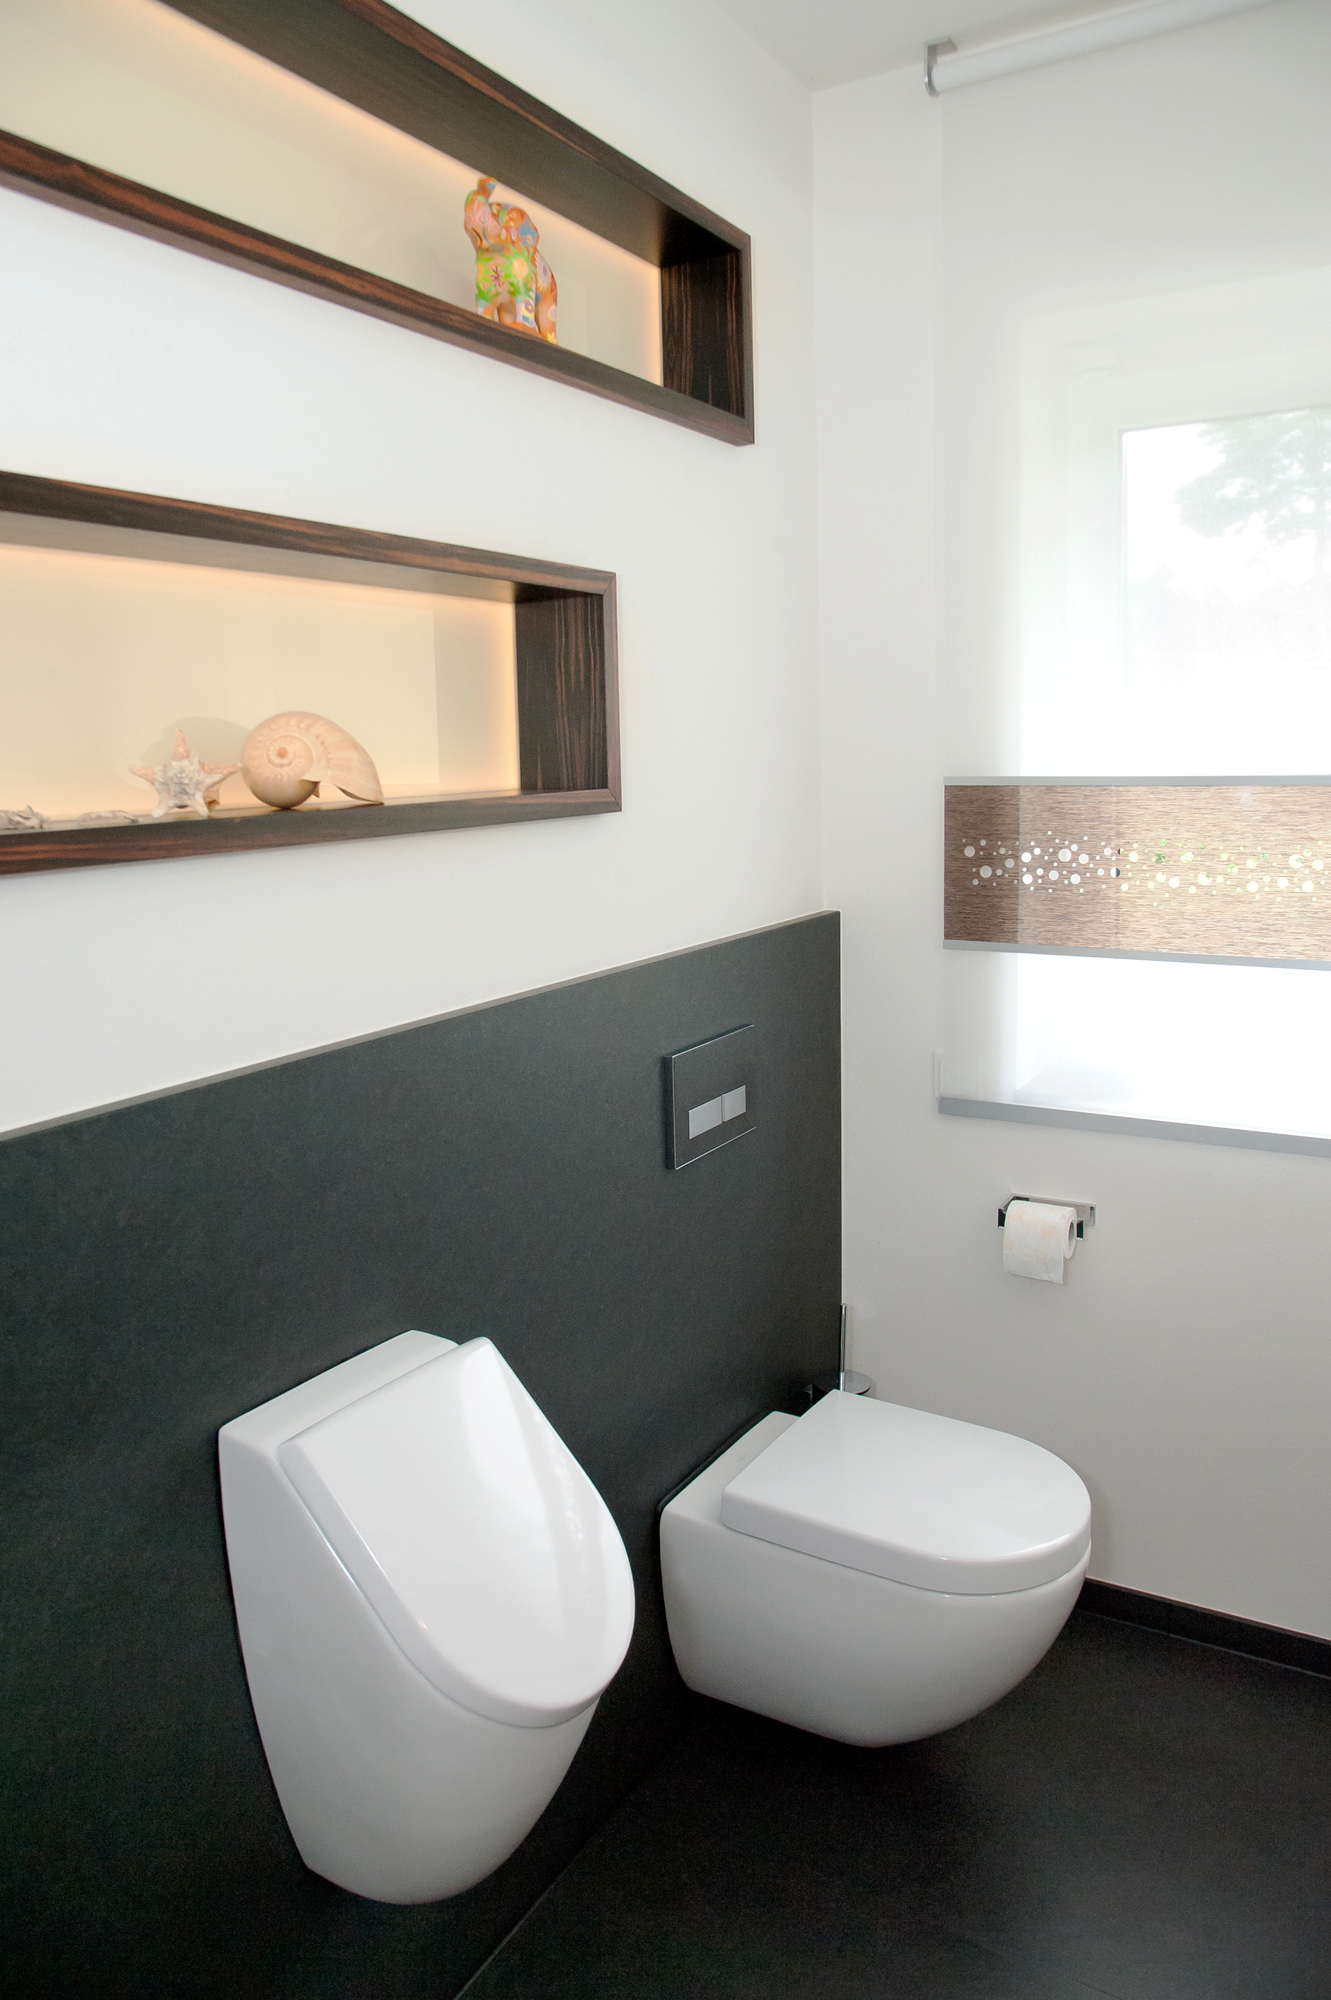 Uitgebreid binnenkort skelet Groot toilet met urinoir! – Interieur-inrichting.net